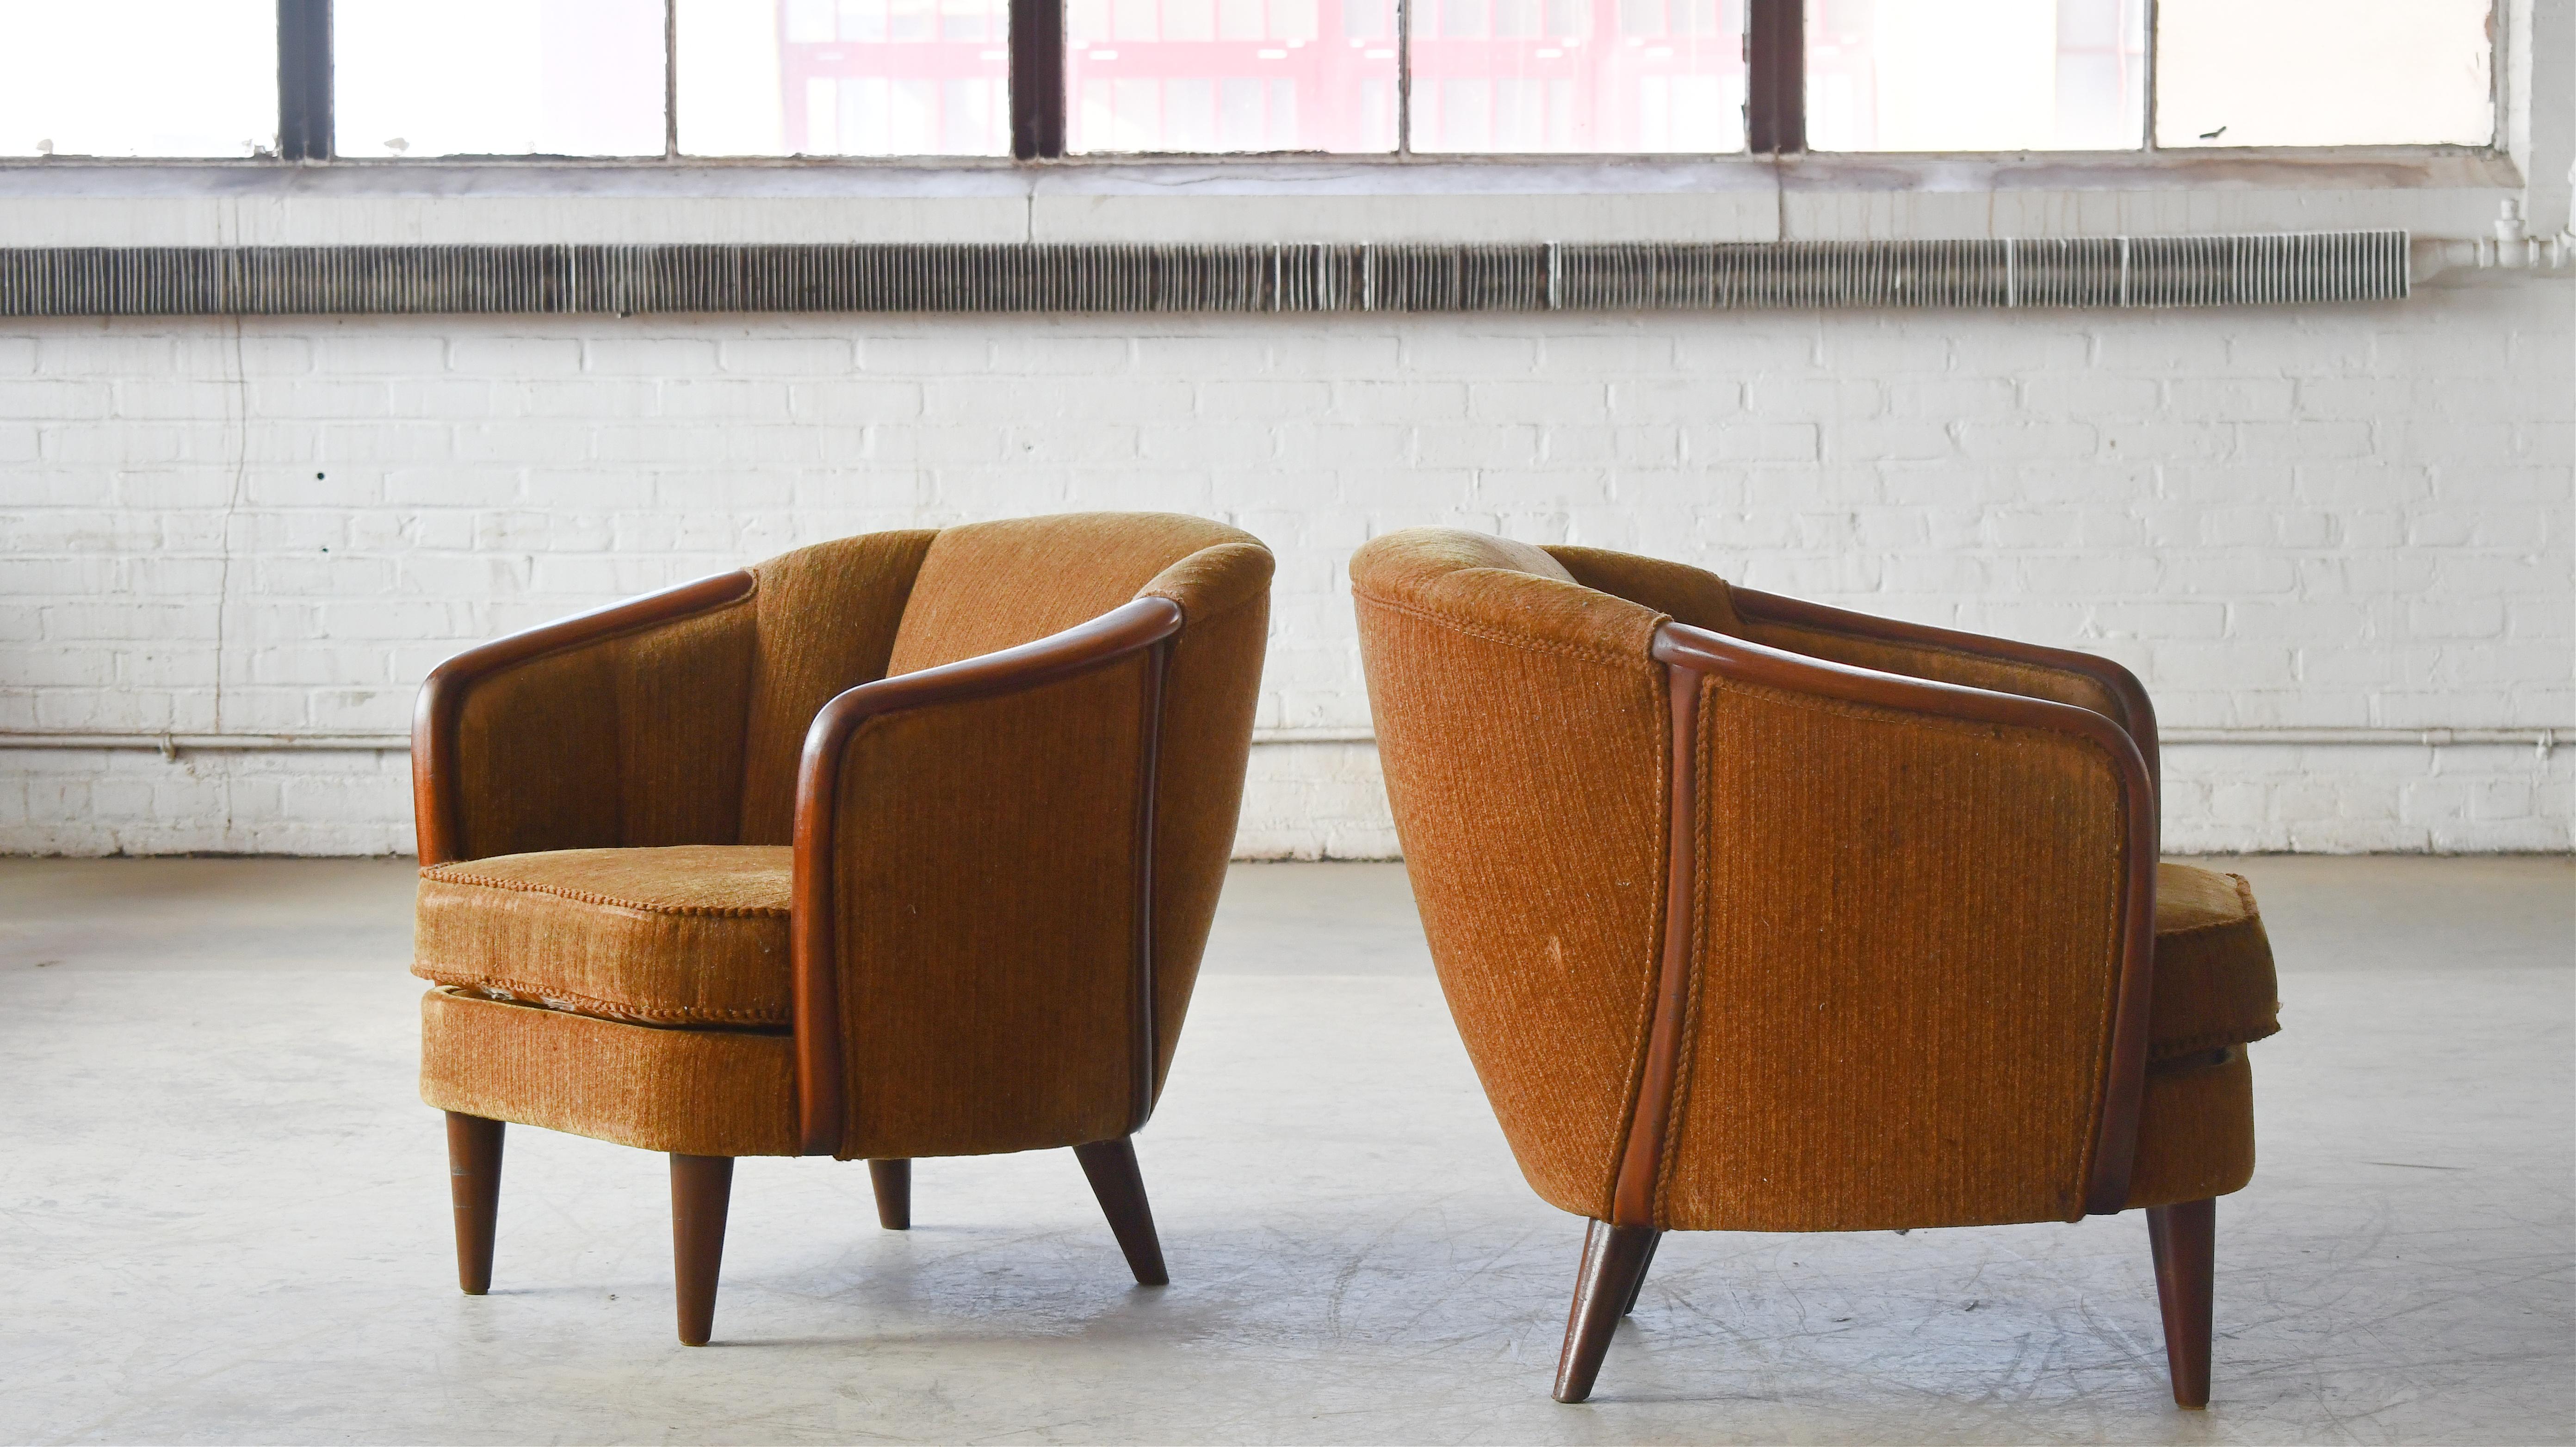 Seltene und schöne Sessel im Tonnen- oder Wannenstil, hergestellt in Dänemark in den 1950er Jahren.  Einzigartiges Design und eine starke Präsenz, um einen Raum zu verankern. Beine, Armlehnen und Einbaurahmen aus Teakholz mit schöner Farbe, Maserung